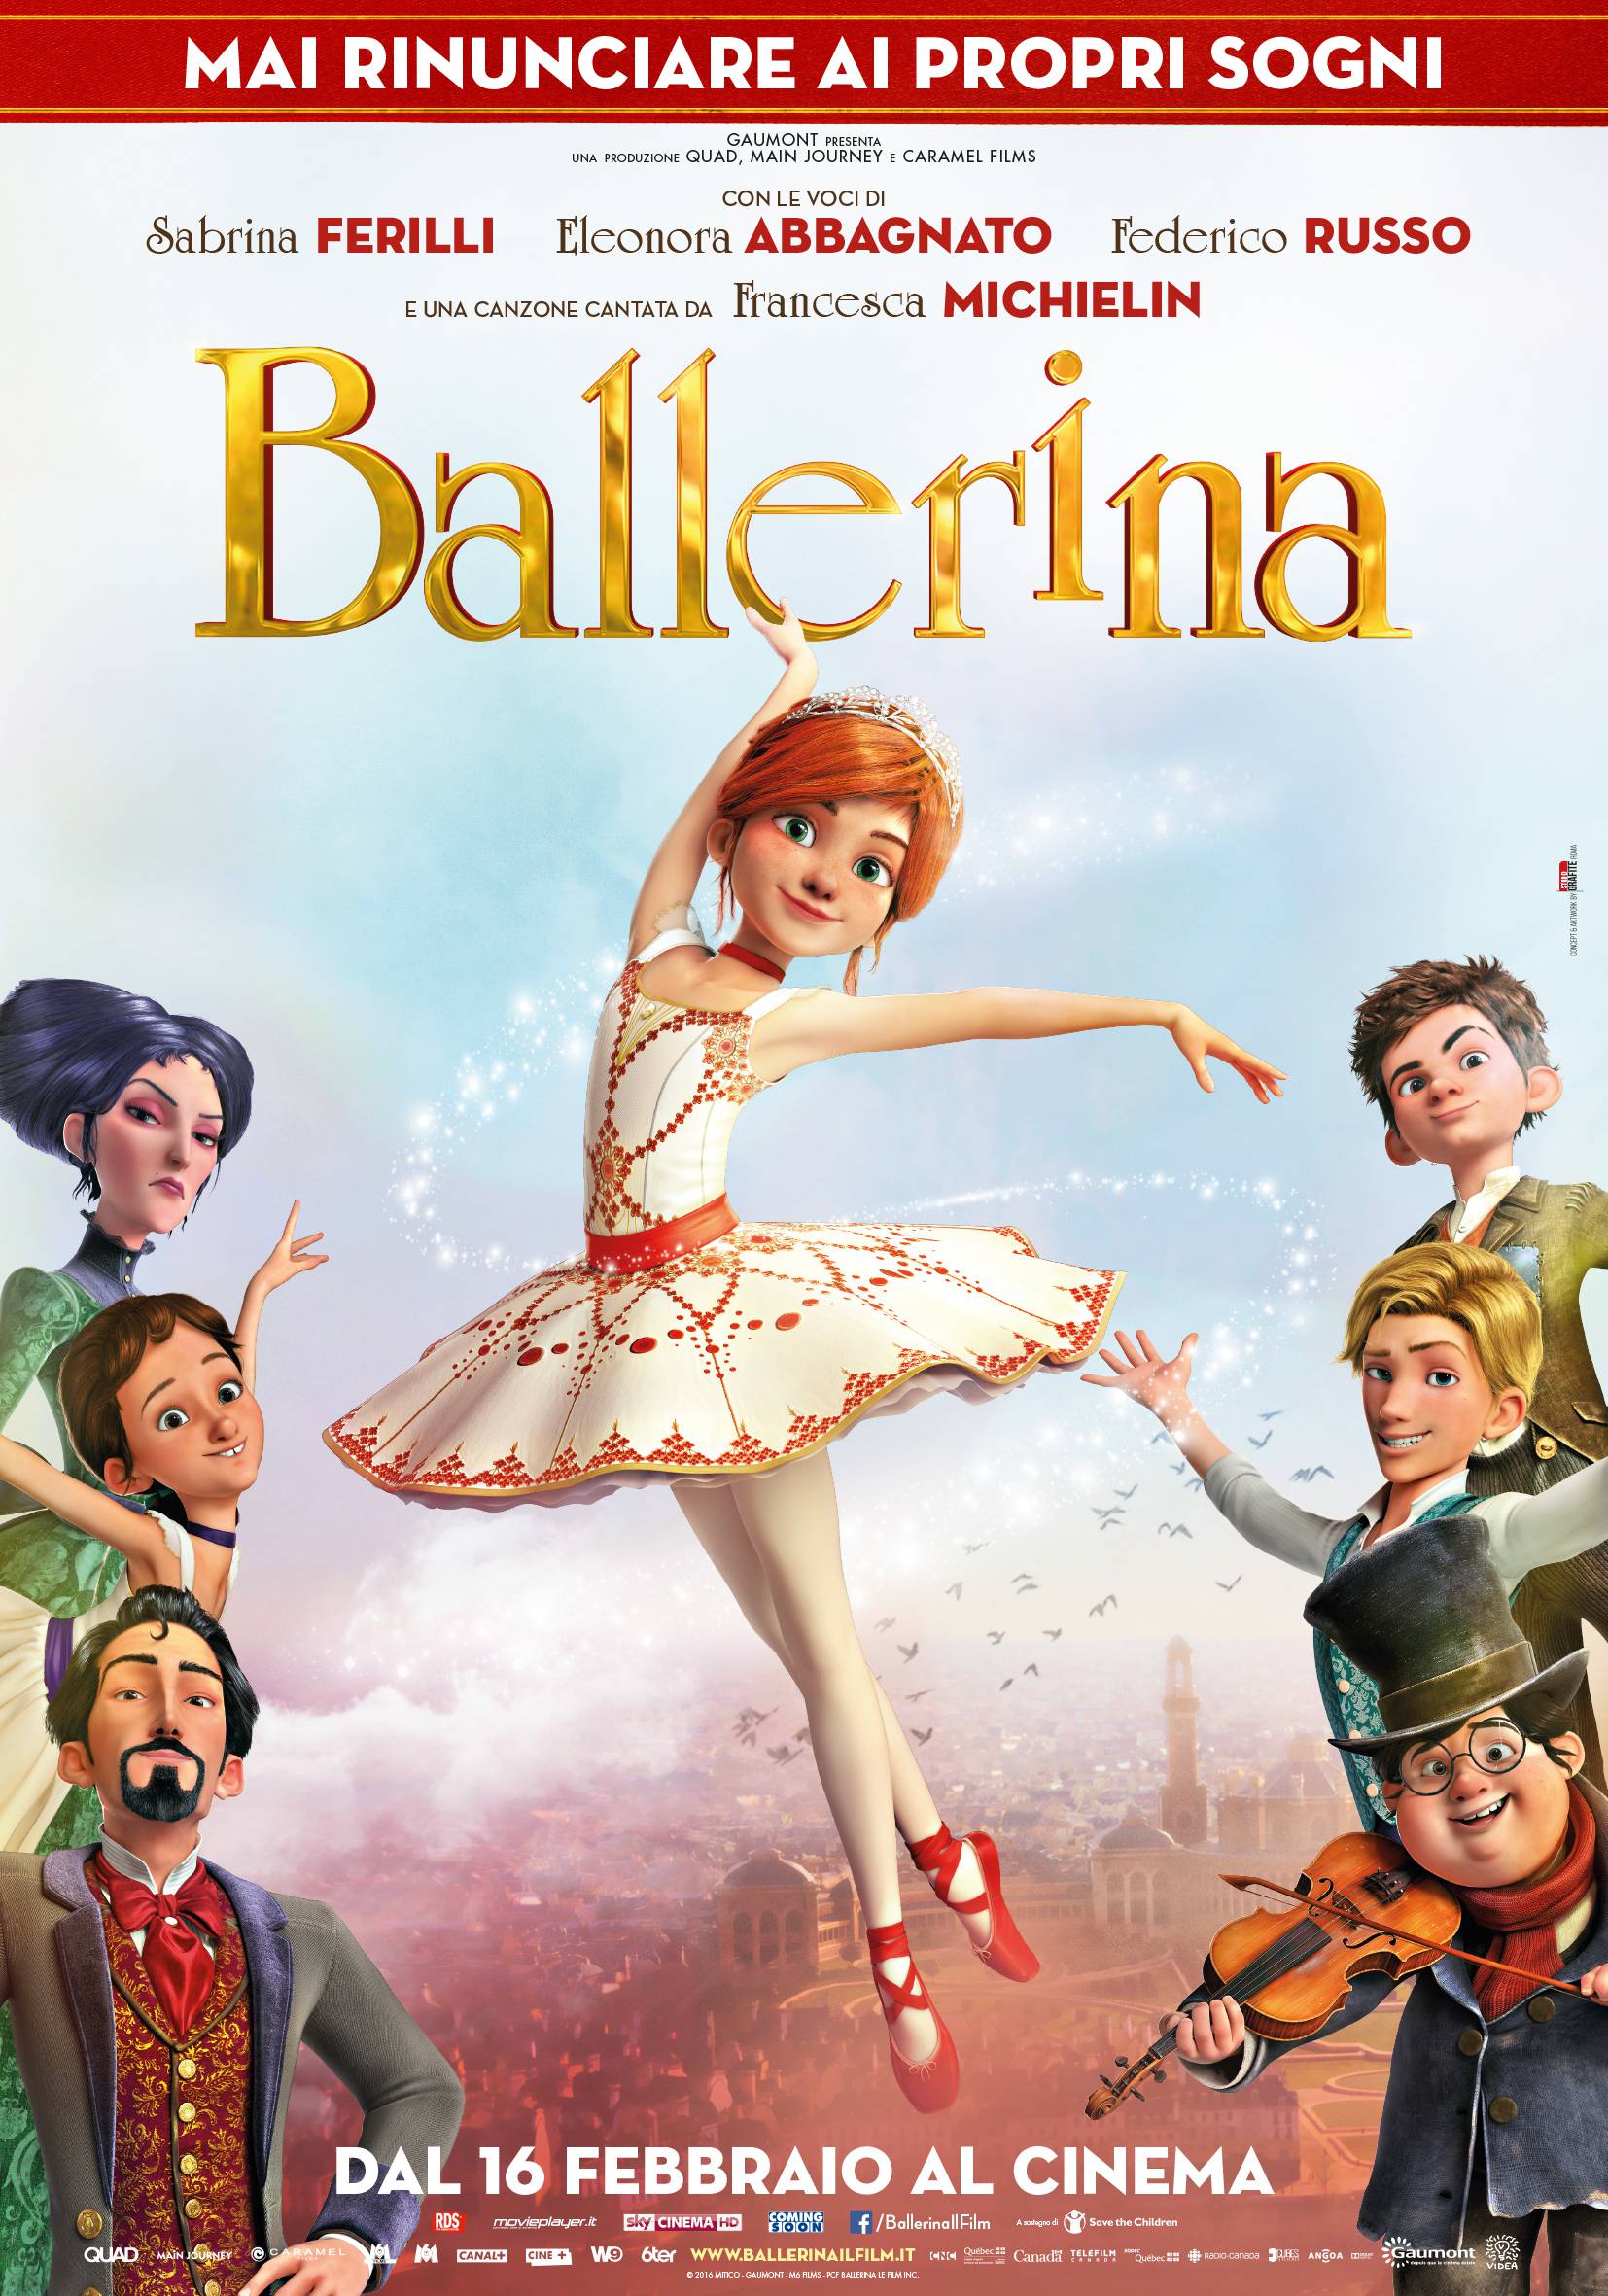  Ballerina Il Film D animazione Dedicato Alla Danza Che Far Sognare 